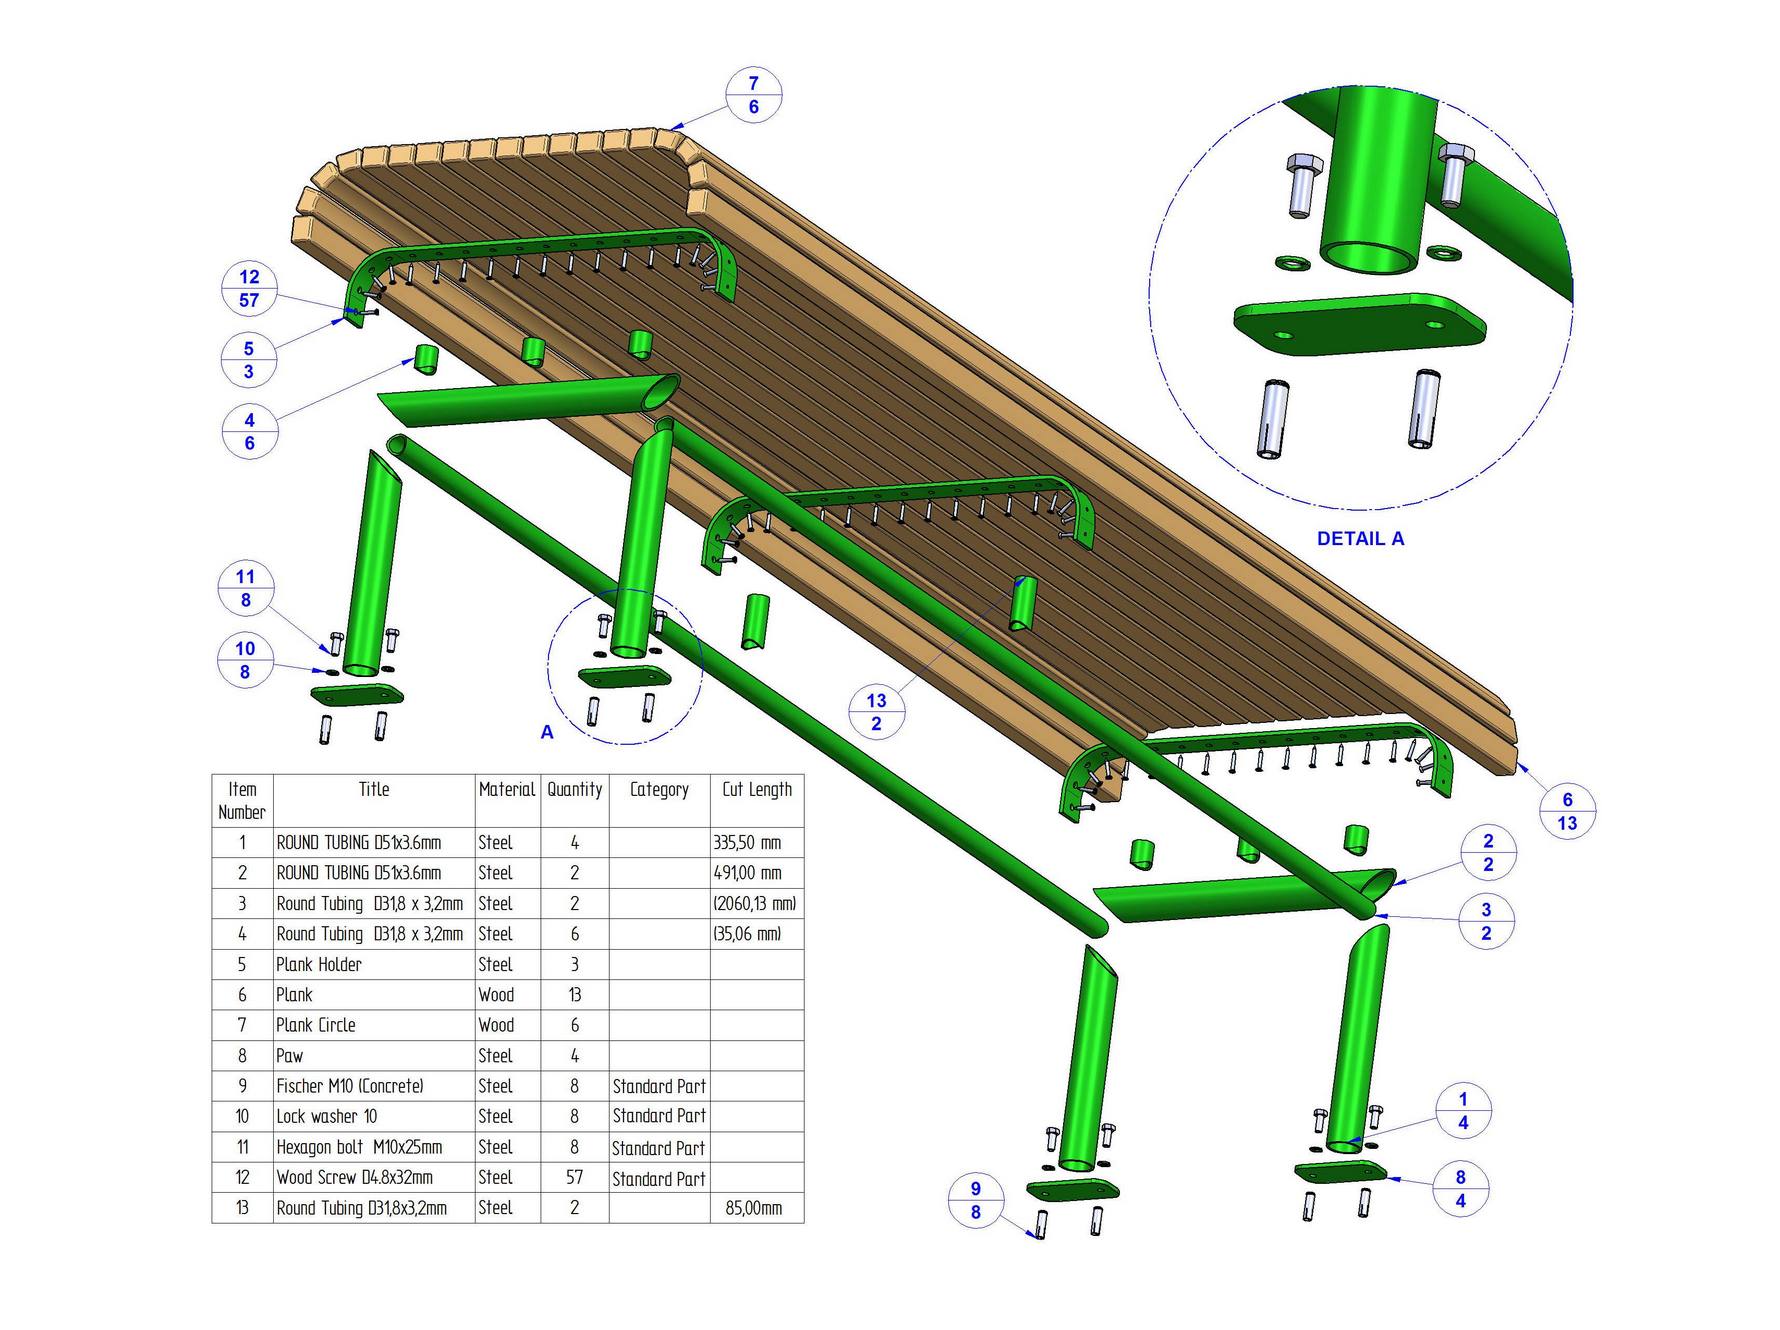 Simple park bench plan - Parts list